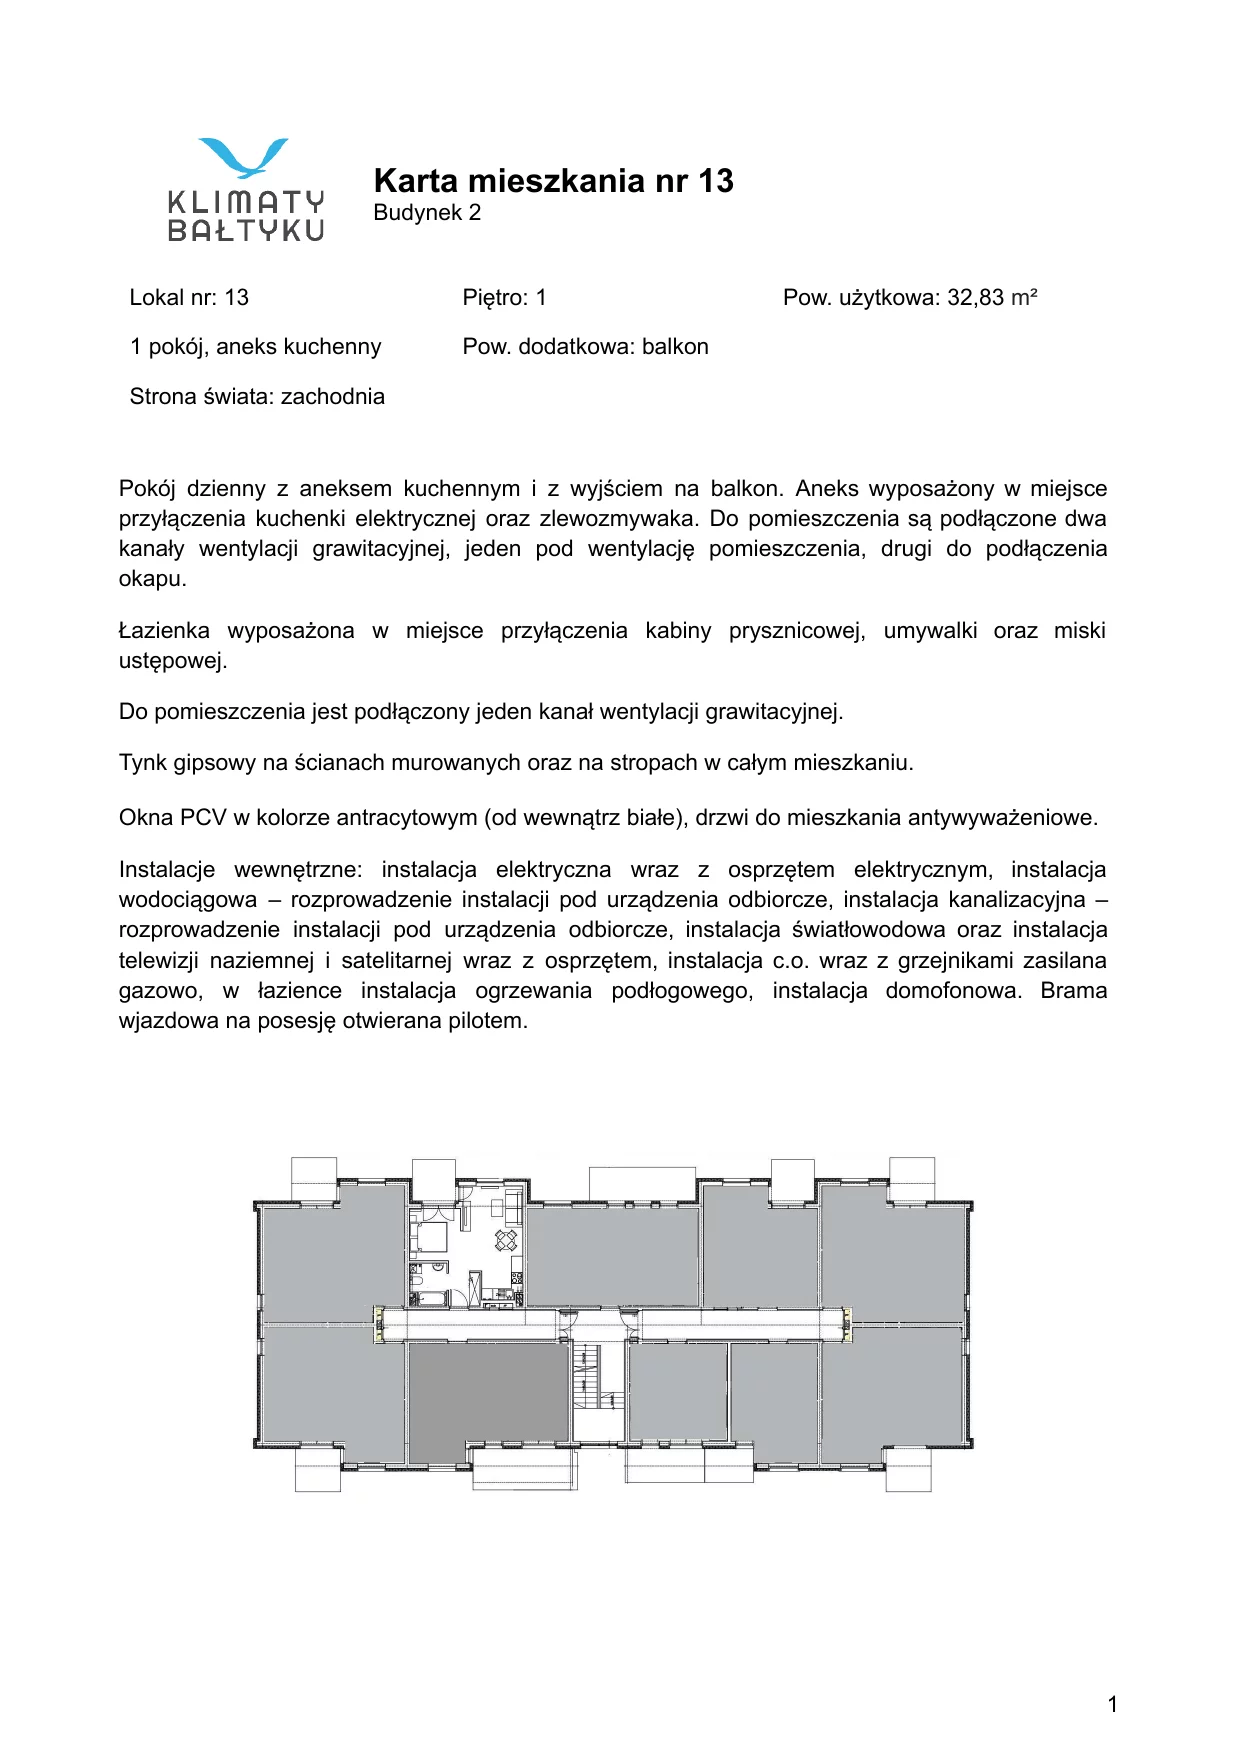 Apartament 33,83 m², piętro 1, oferta nr 13, Klimaty Bałtyku, Dziwnów, ul. Daglezji 93-94